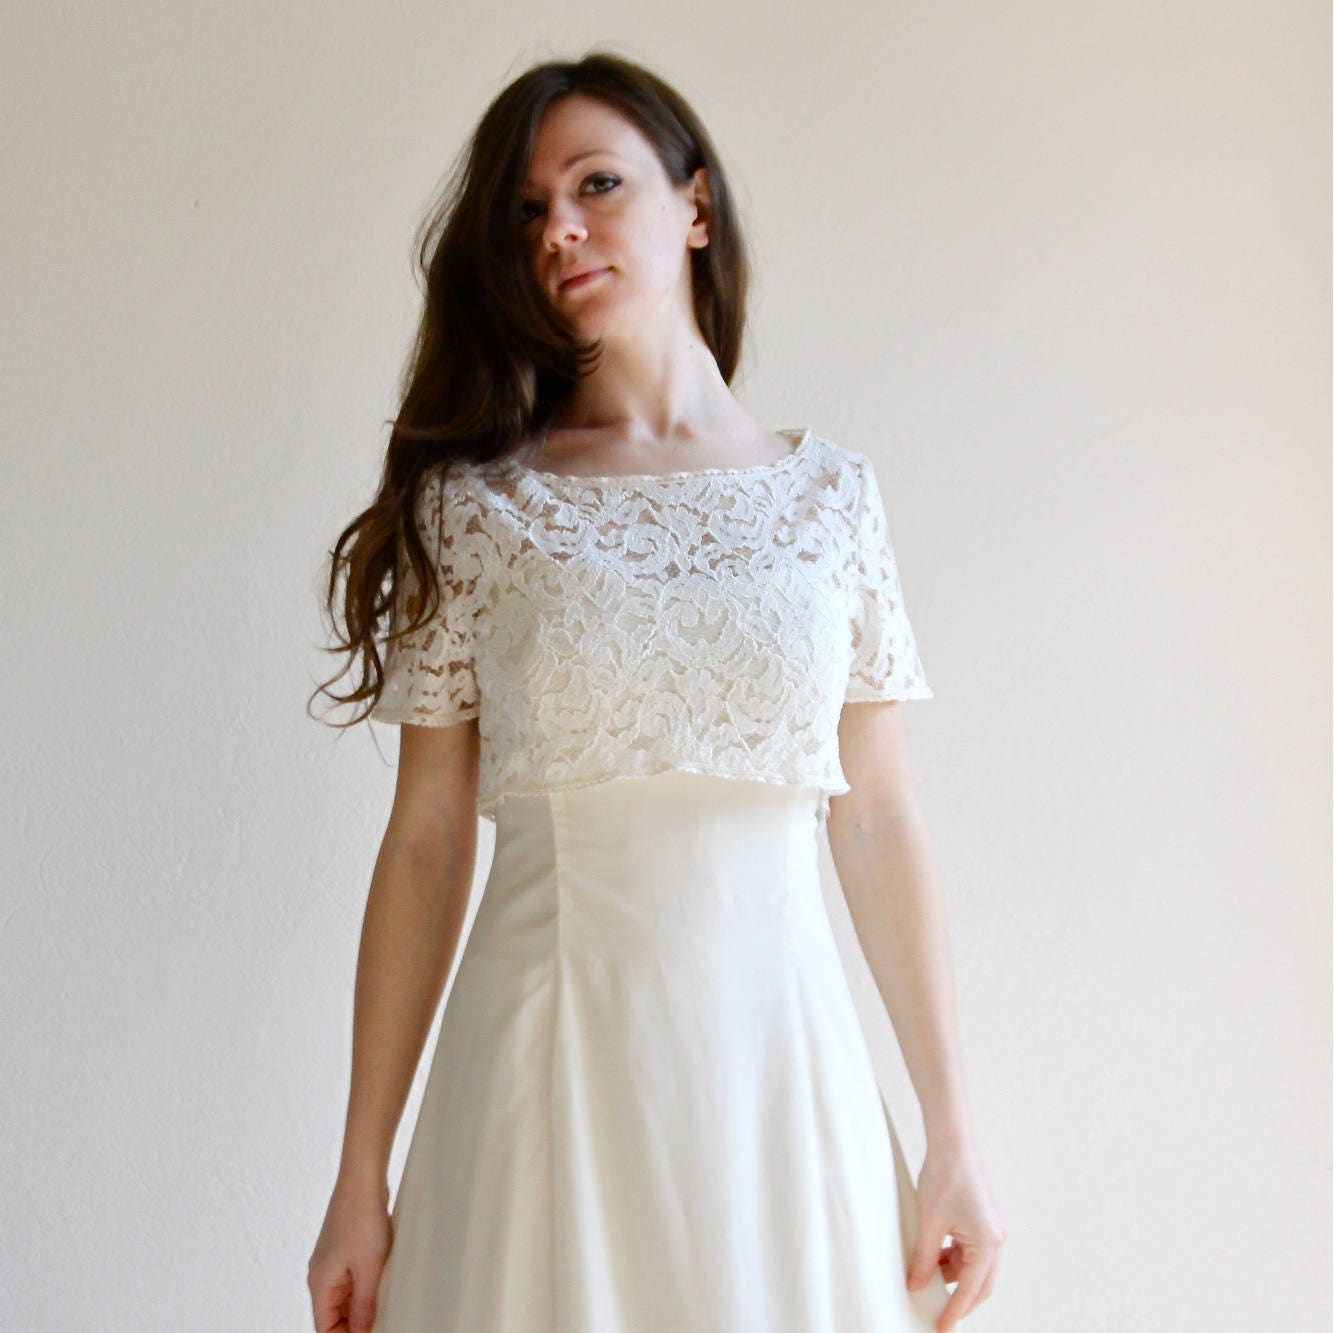 Wedding dress lace wedding dress Aline wedding dress modest | Etsy